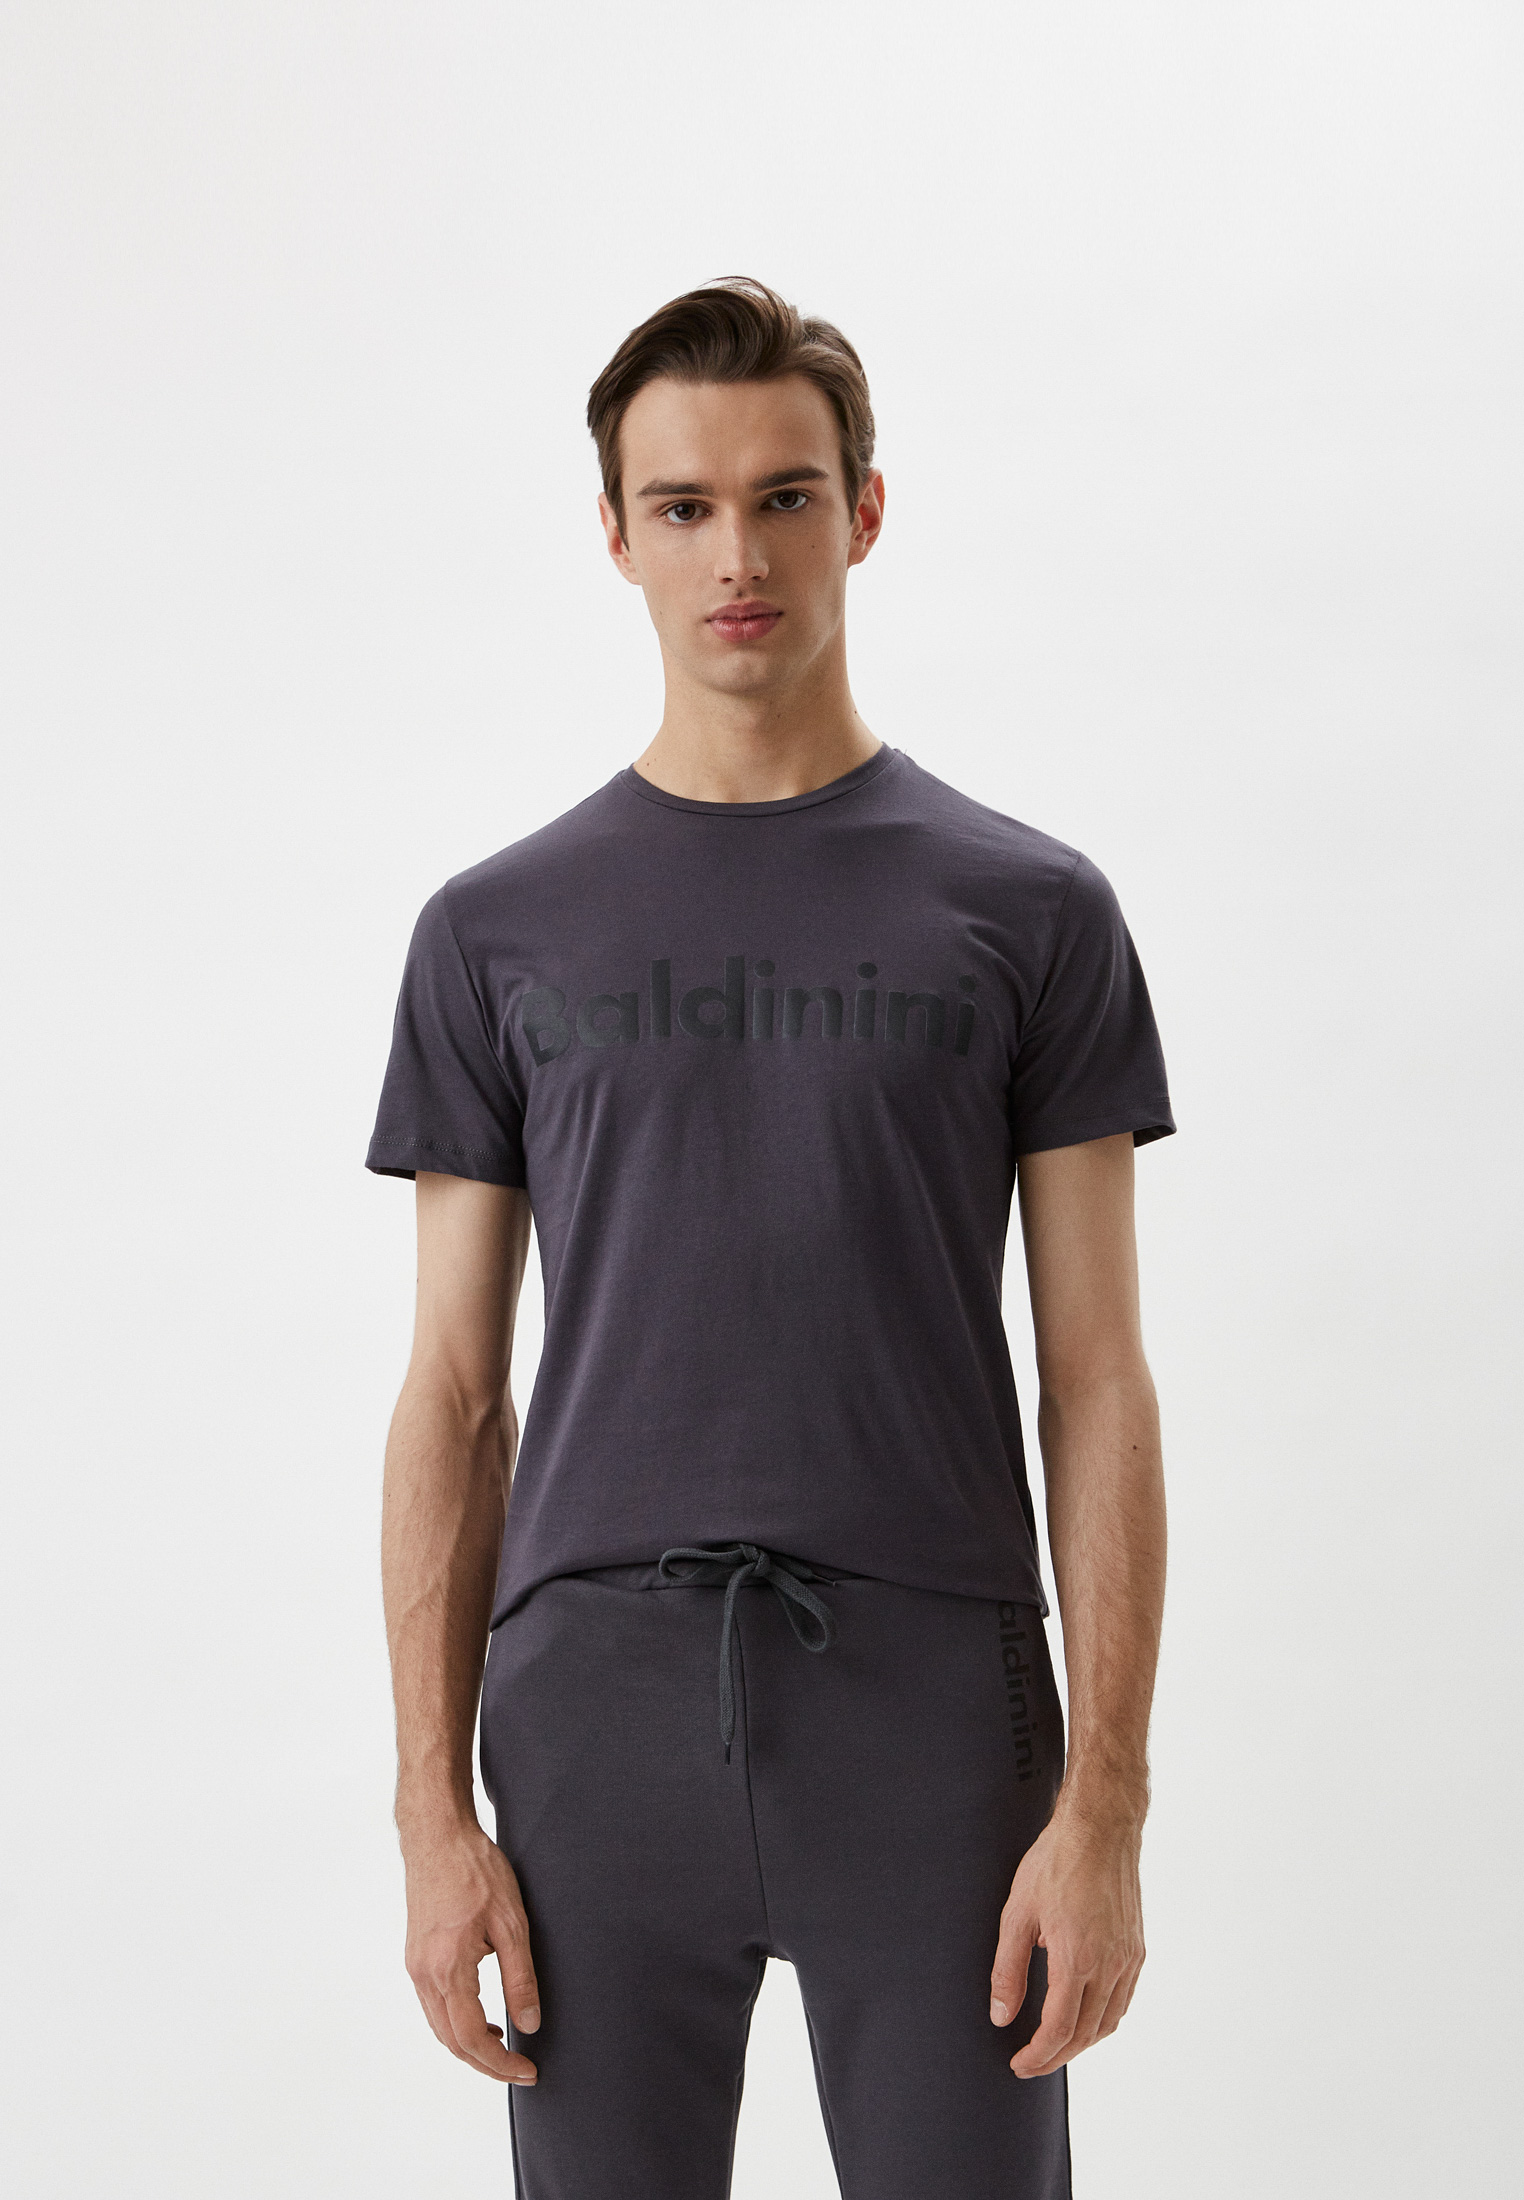 Мужская футболка Baldinini (Балдинини) M19: изображение 1